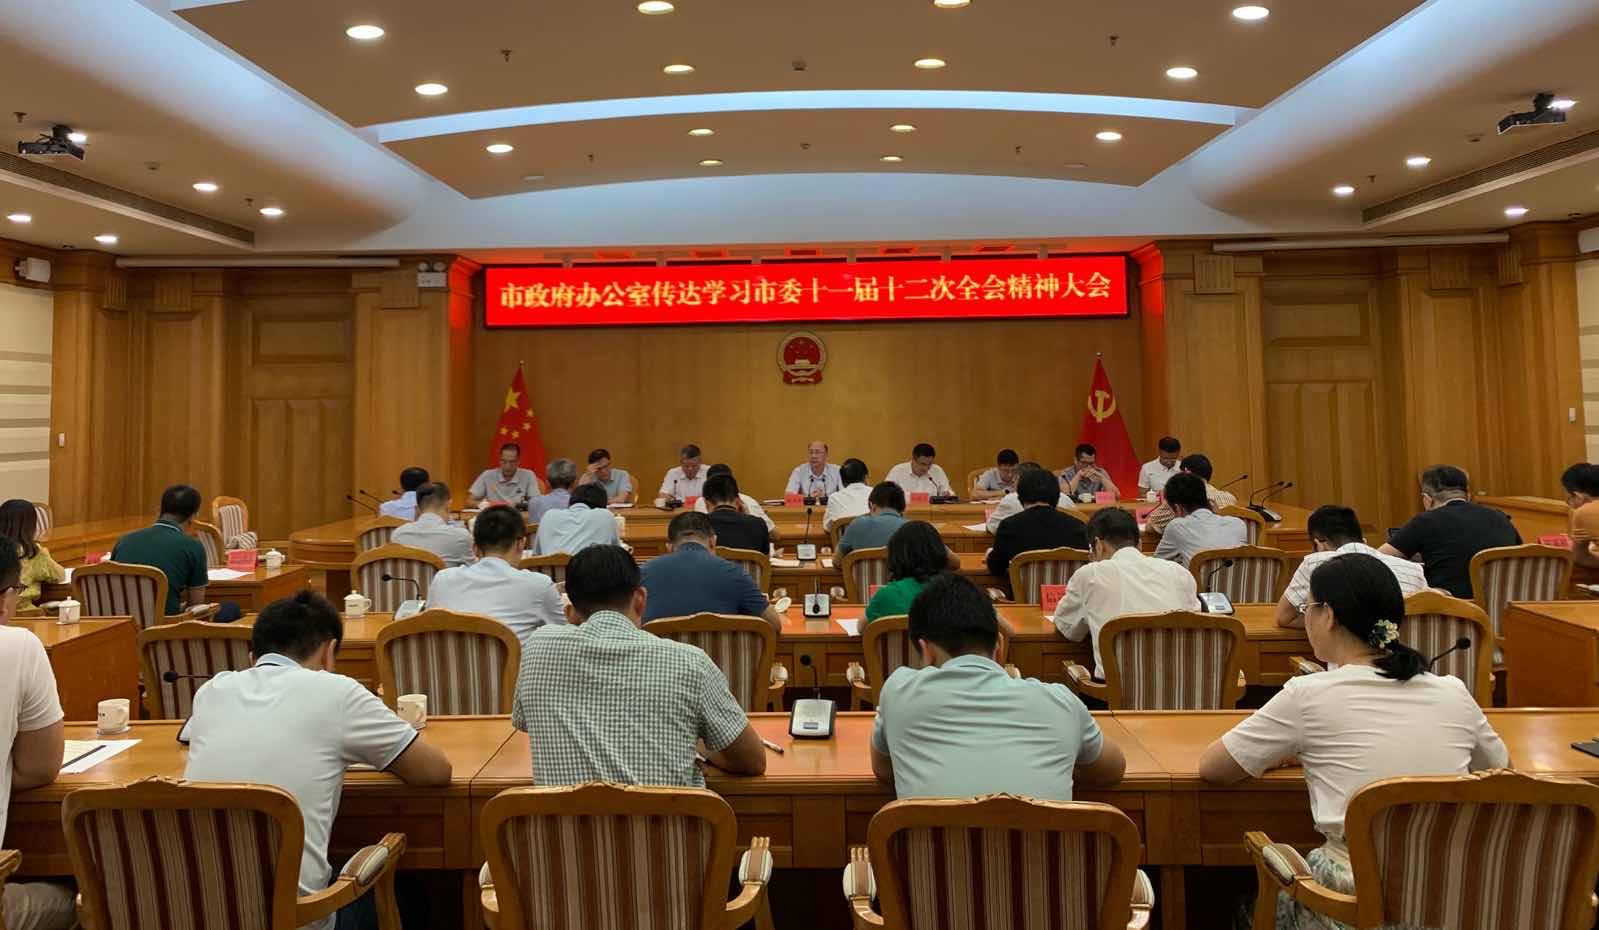 8月29日下午,汕头市政府办公室召开全体干部职工大会,传达学习省委